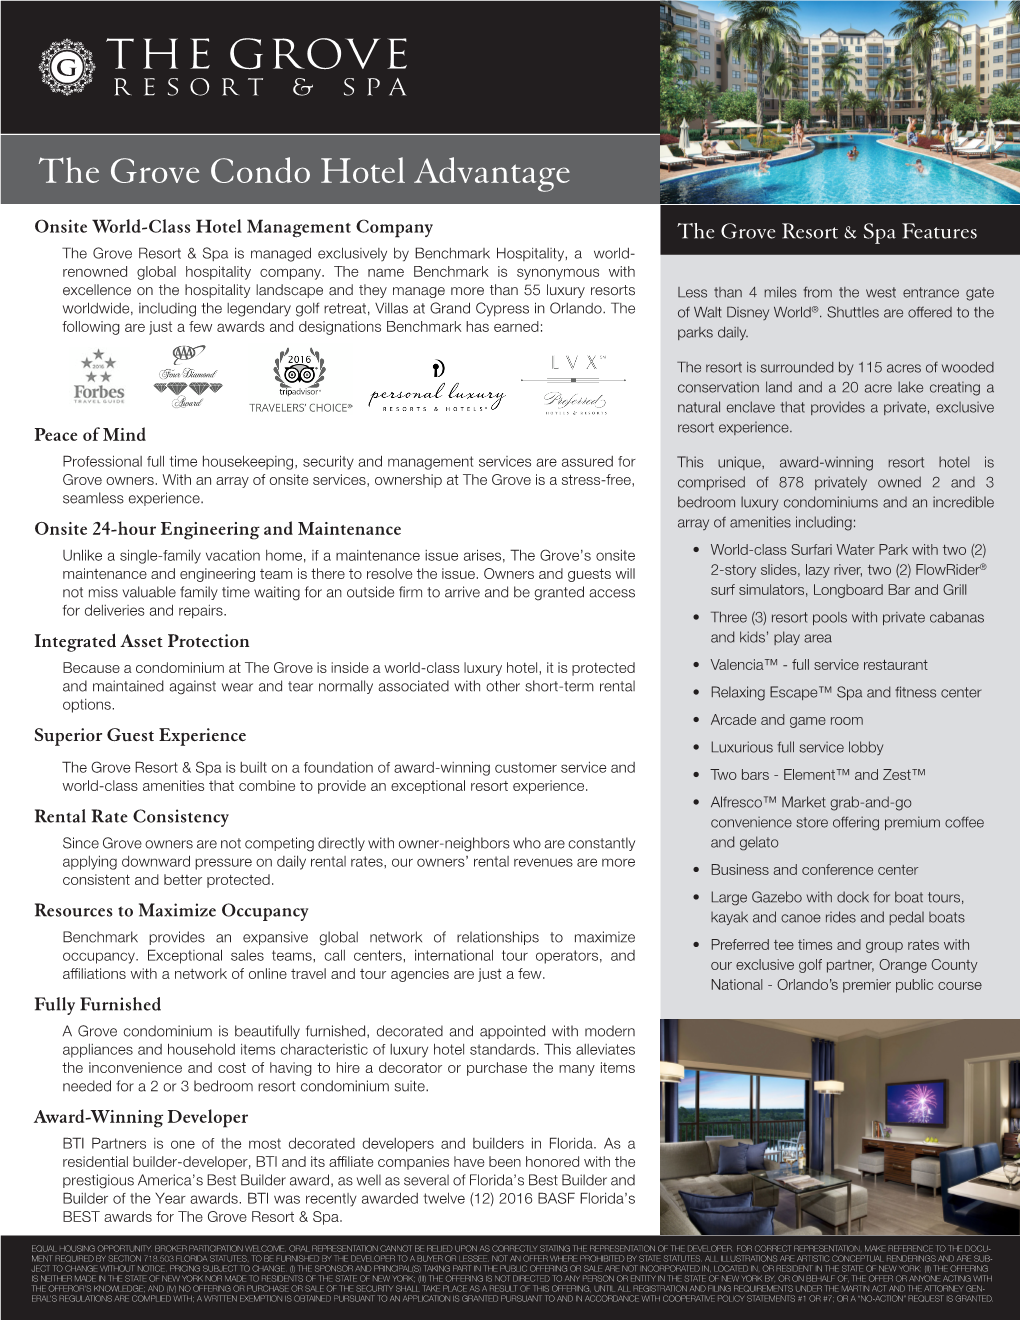 The Grove Condo Hotel Advantage